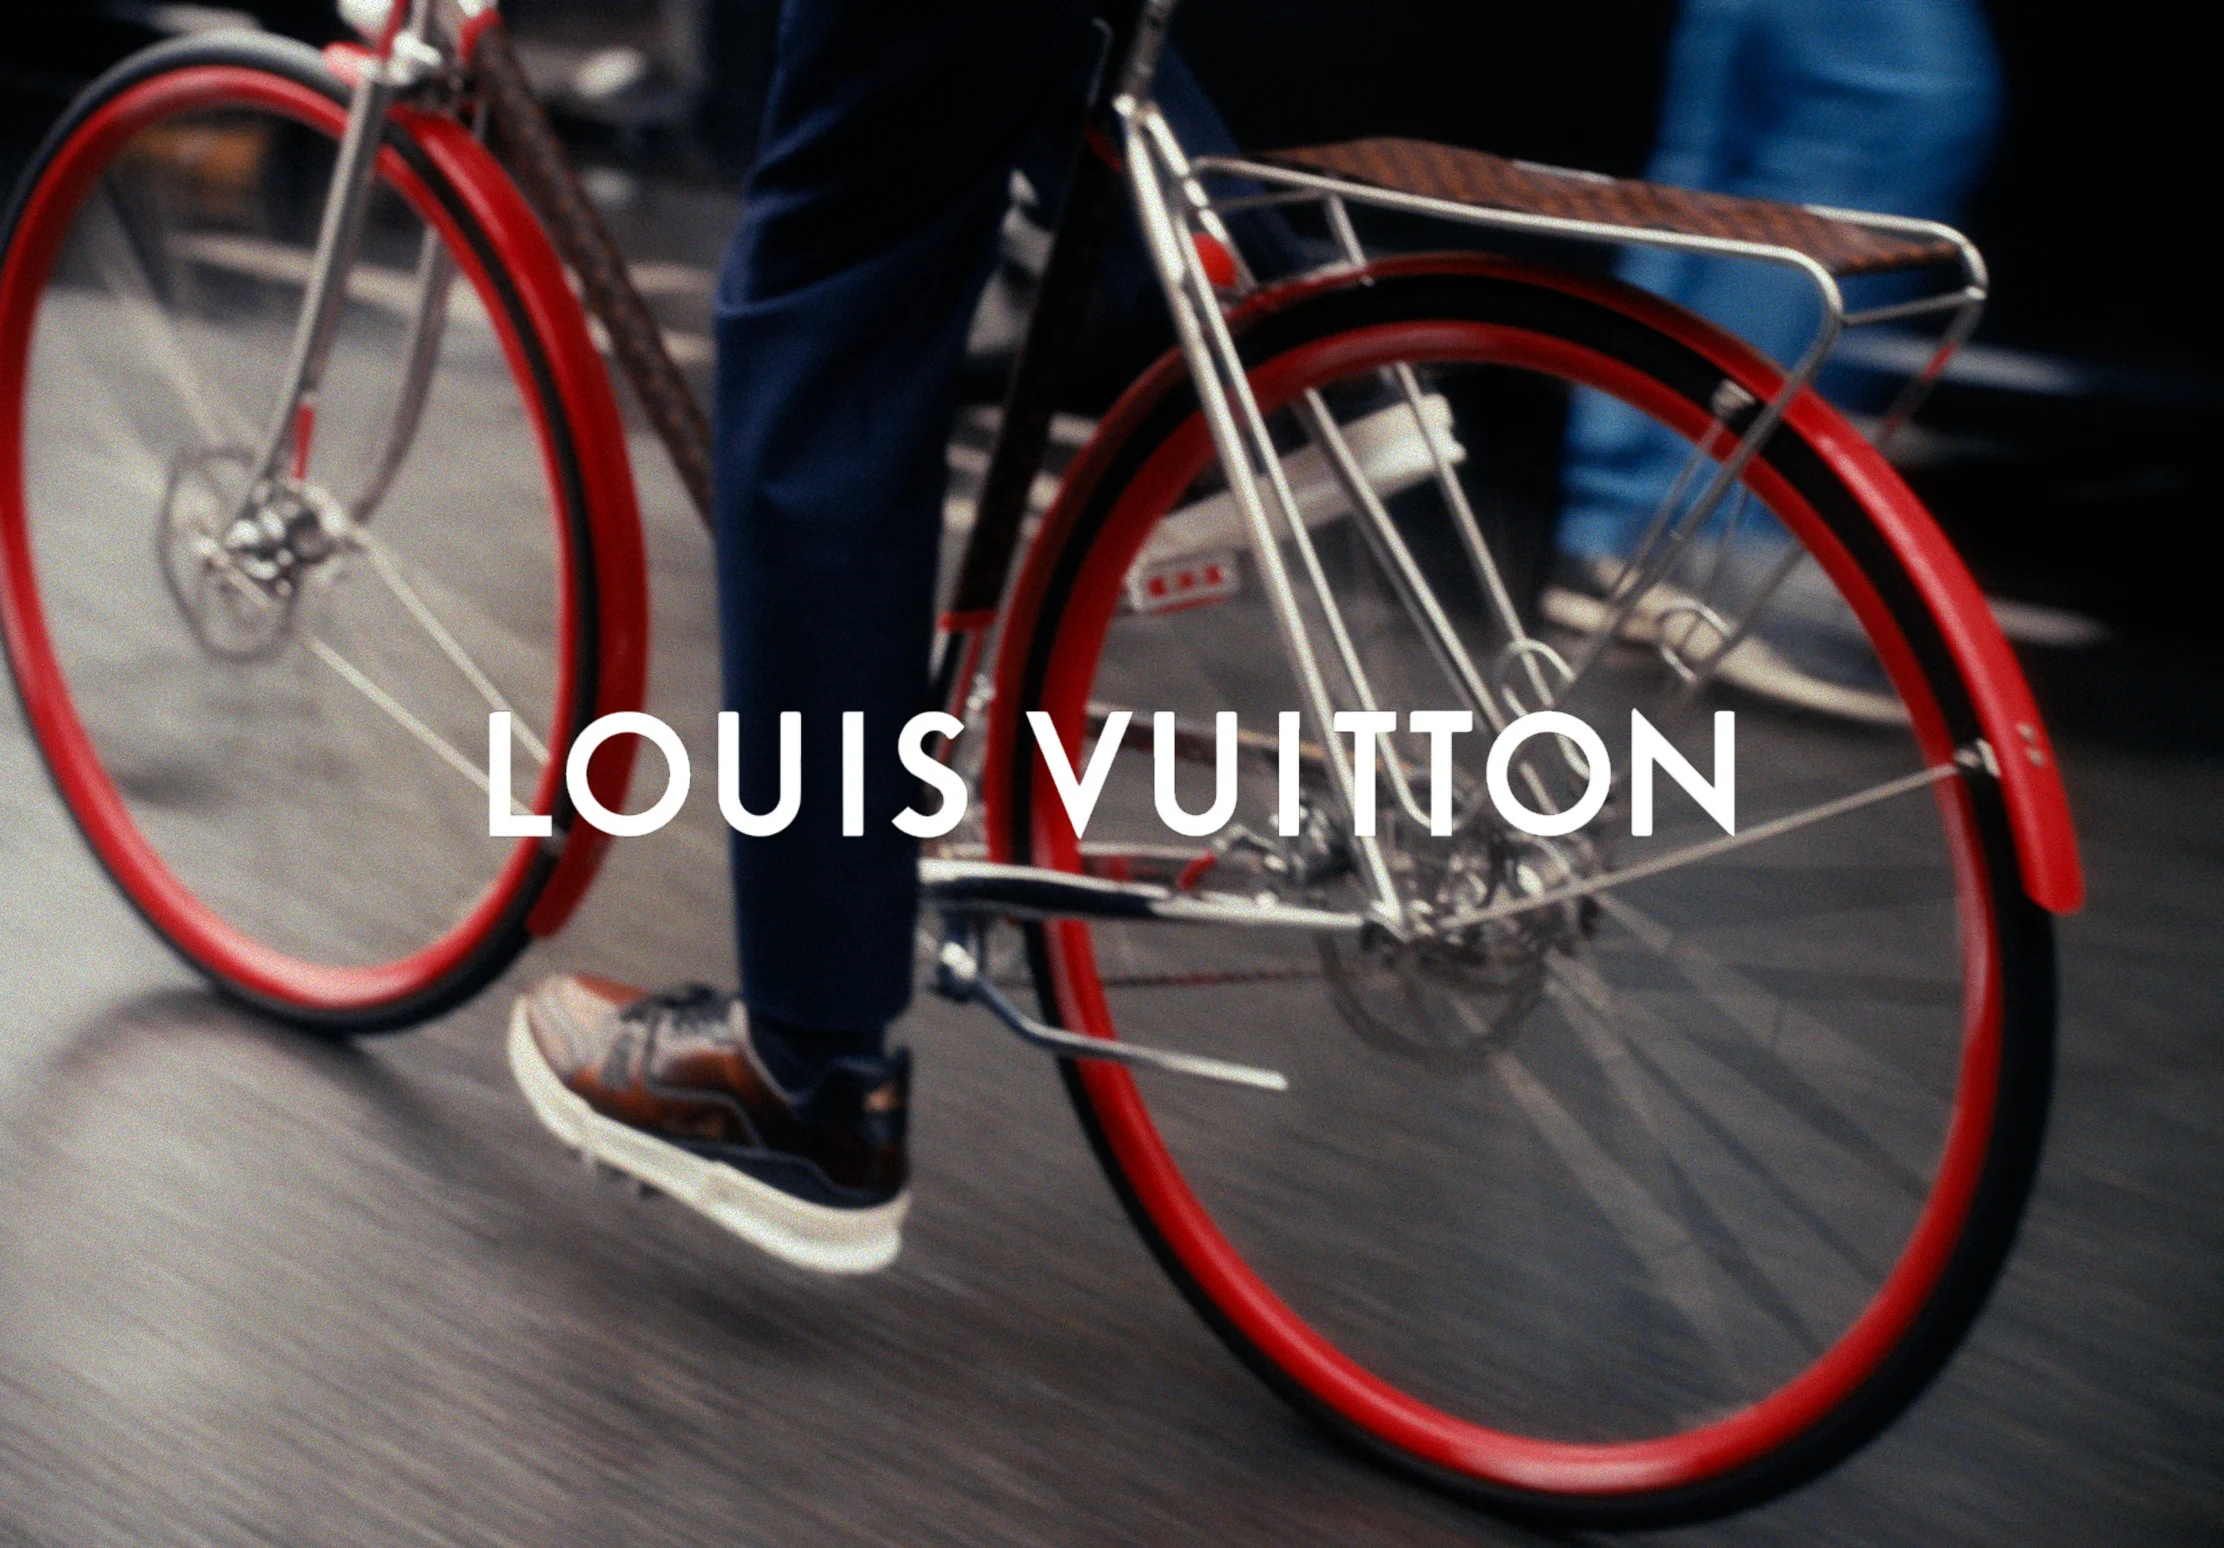 Louis Vuitton bike.  Louis vuitton, Vuitton, Louis